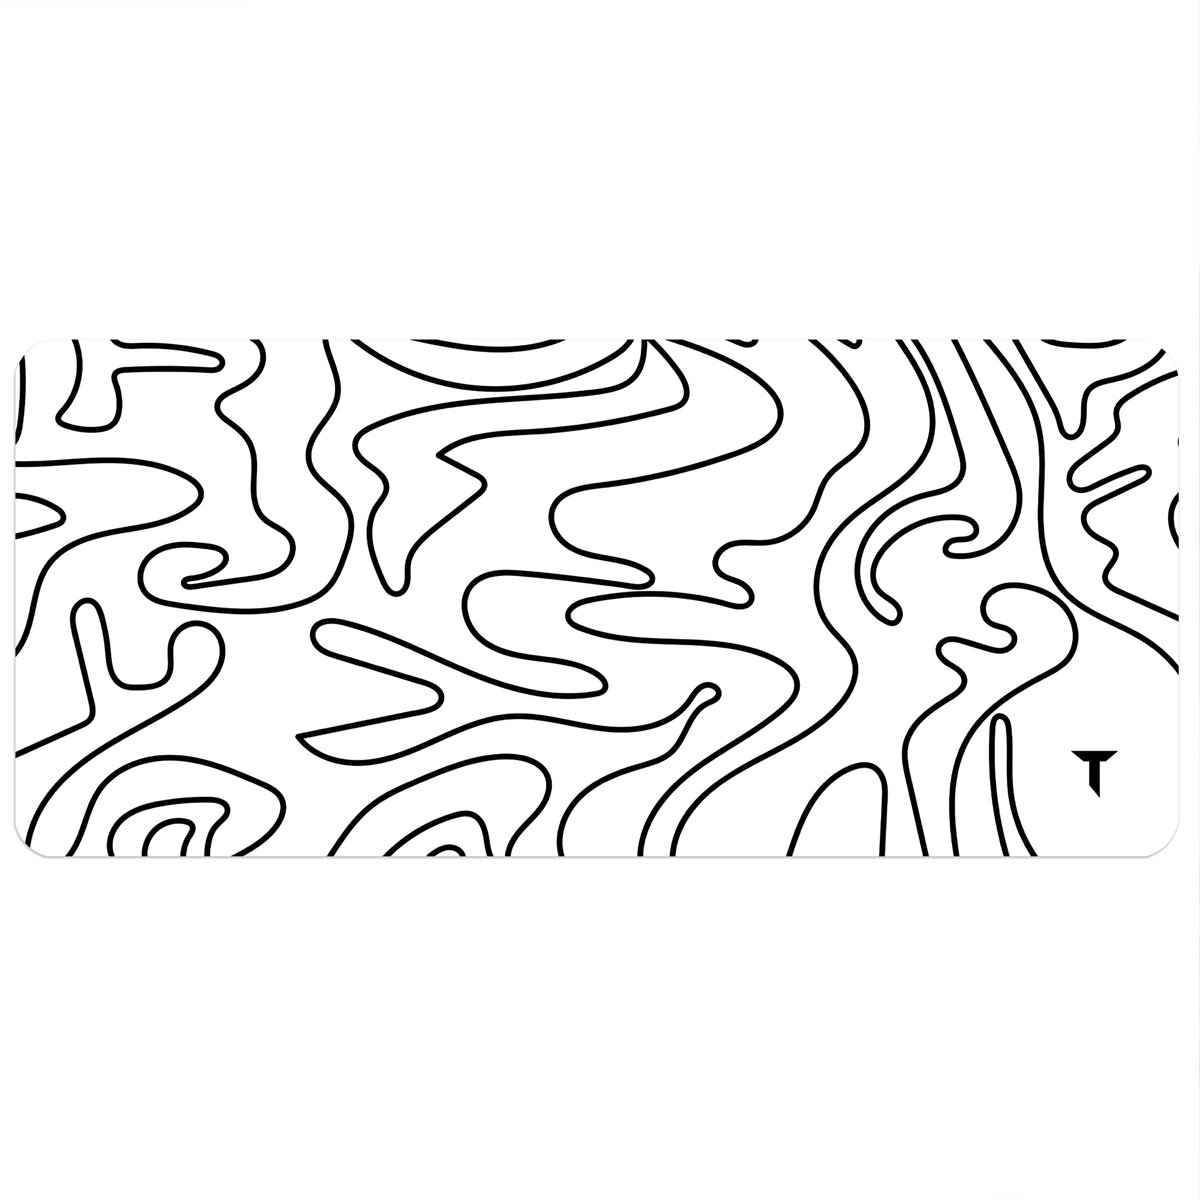 Tommiboi muismat - Topo collectie Wit- xxl muismat - 90x40 cm – Anti-slip – Grote Muismat